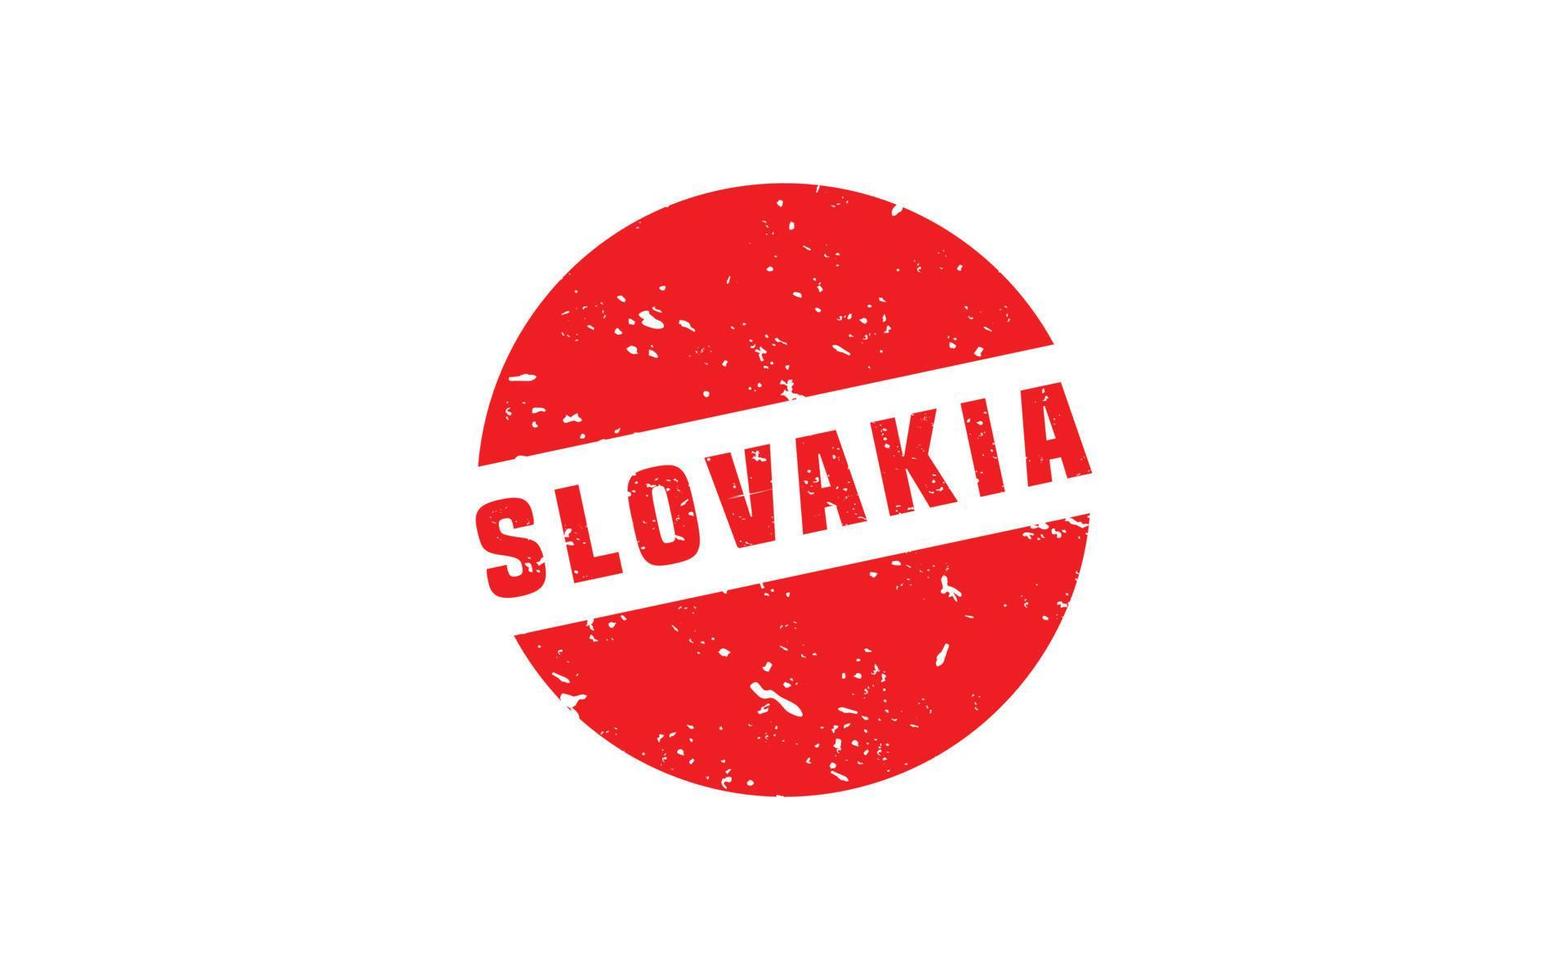 Slowakei Briefmarke Gummi mit Grunge Stil auf Weiß Hintergrund vektor